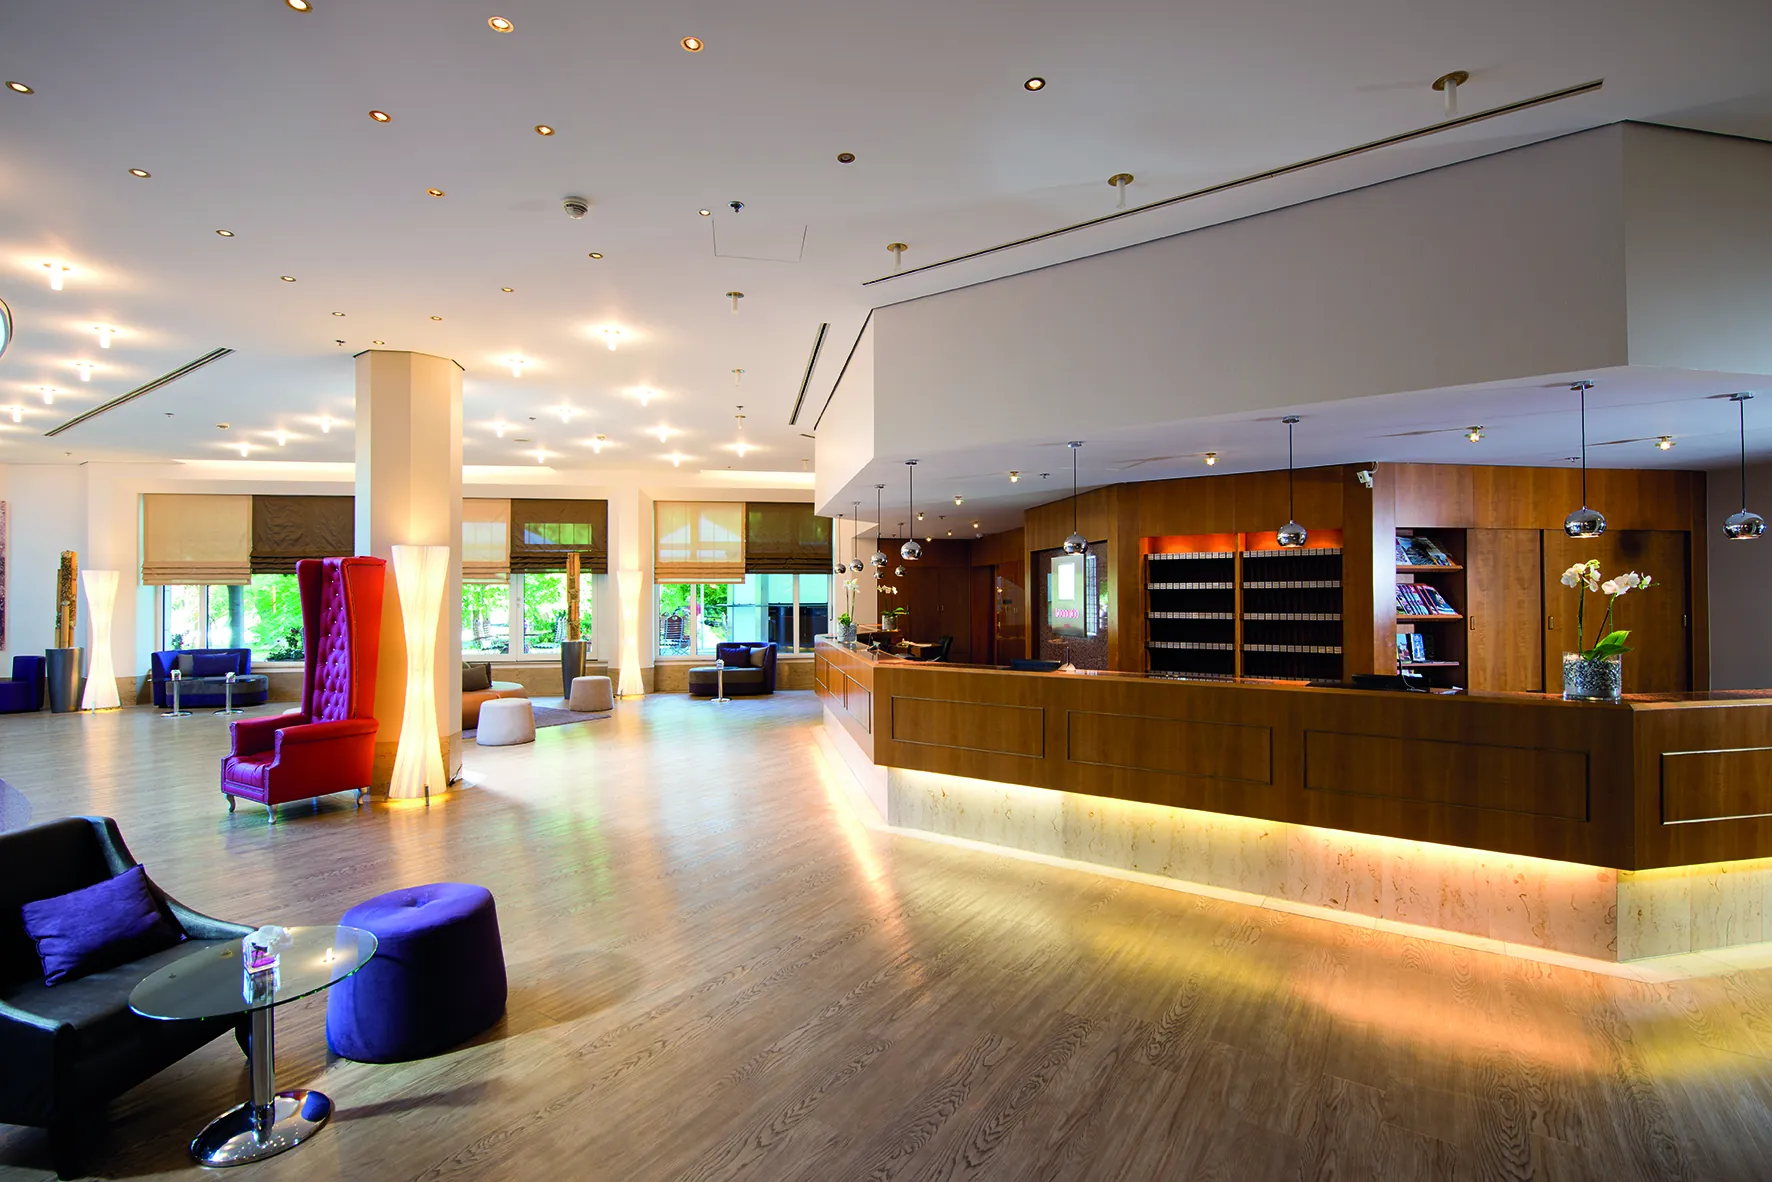 Leonardo Hotel Weimar - Rezeption & Lounge in eleganten Farben und Lichtern